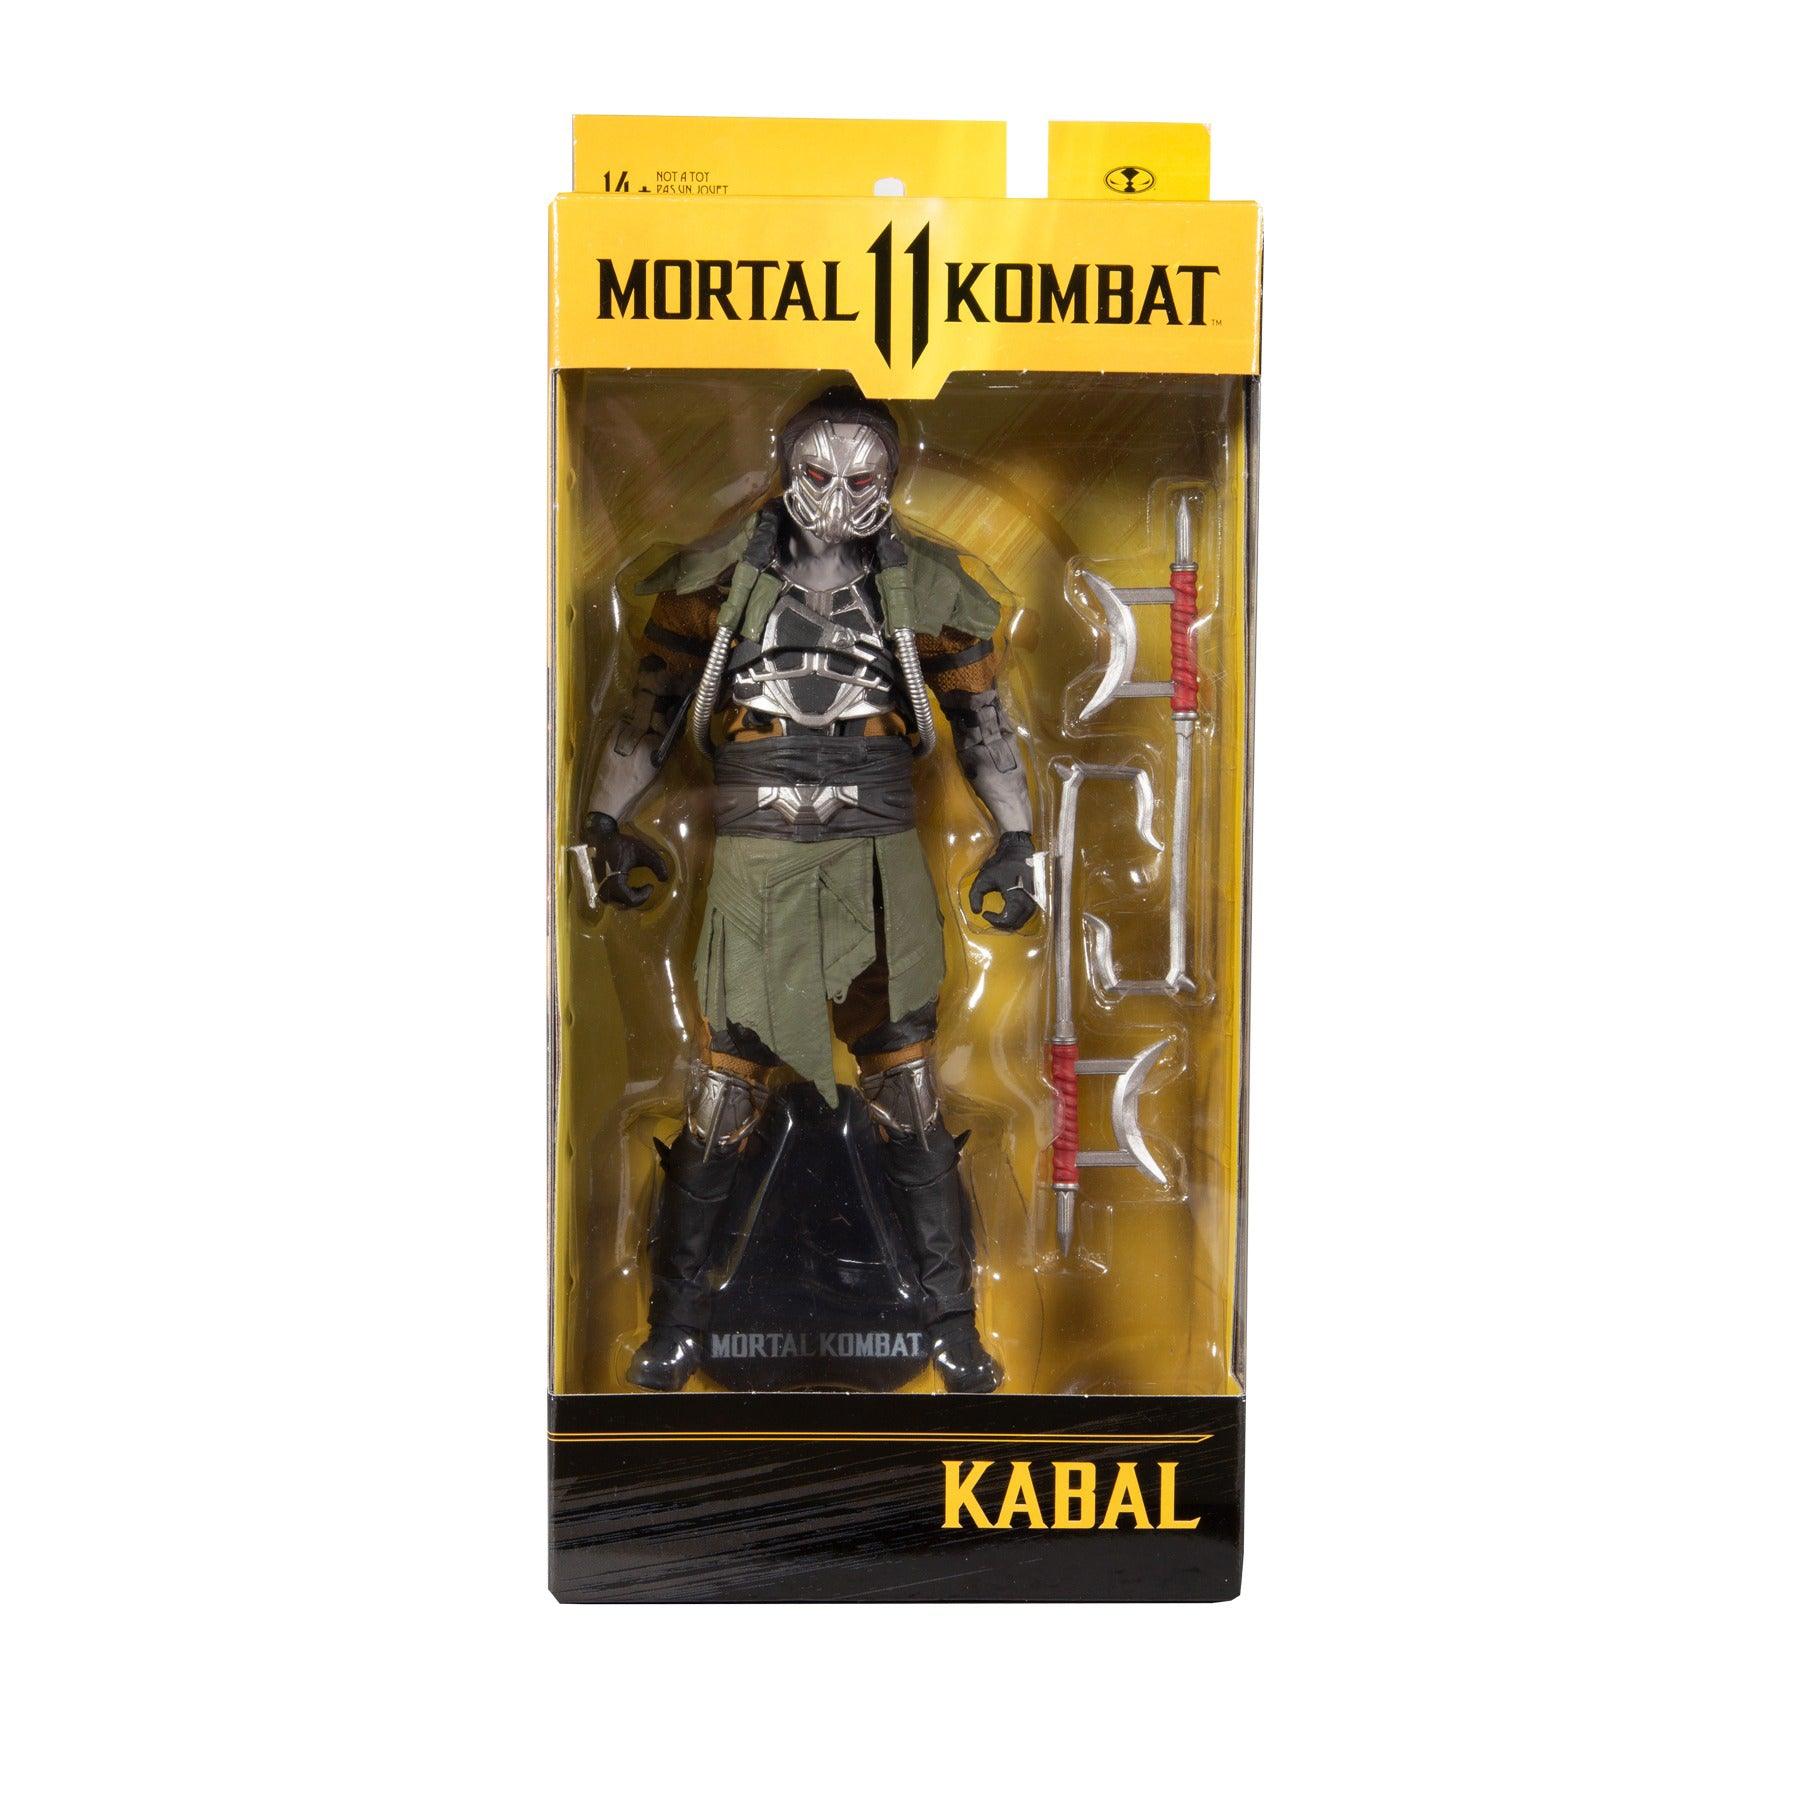 Mft Mk Kabal - Want a New Gadget